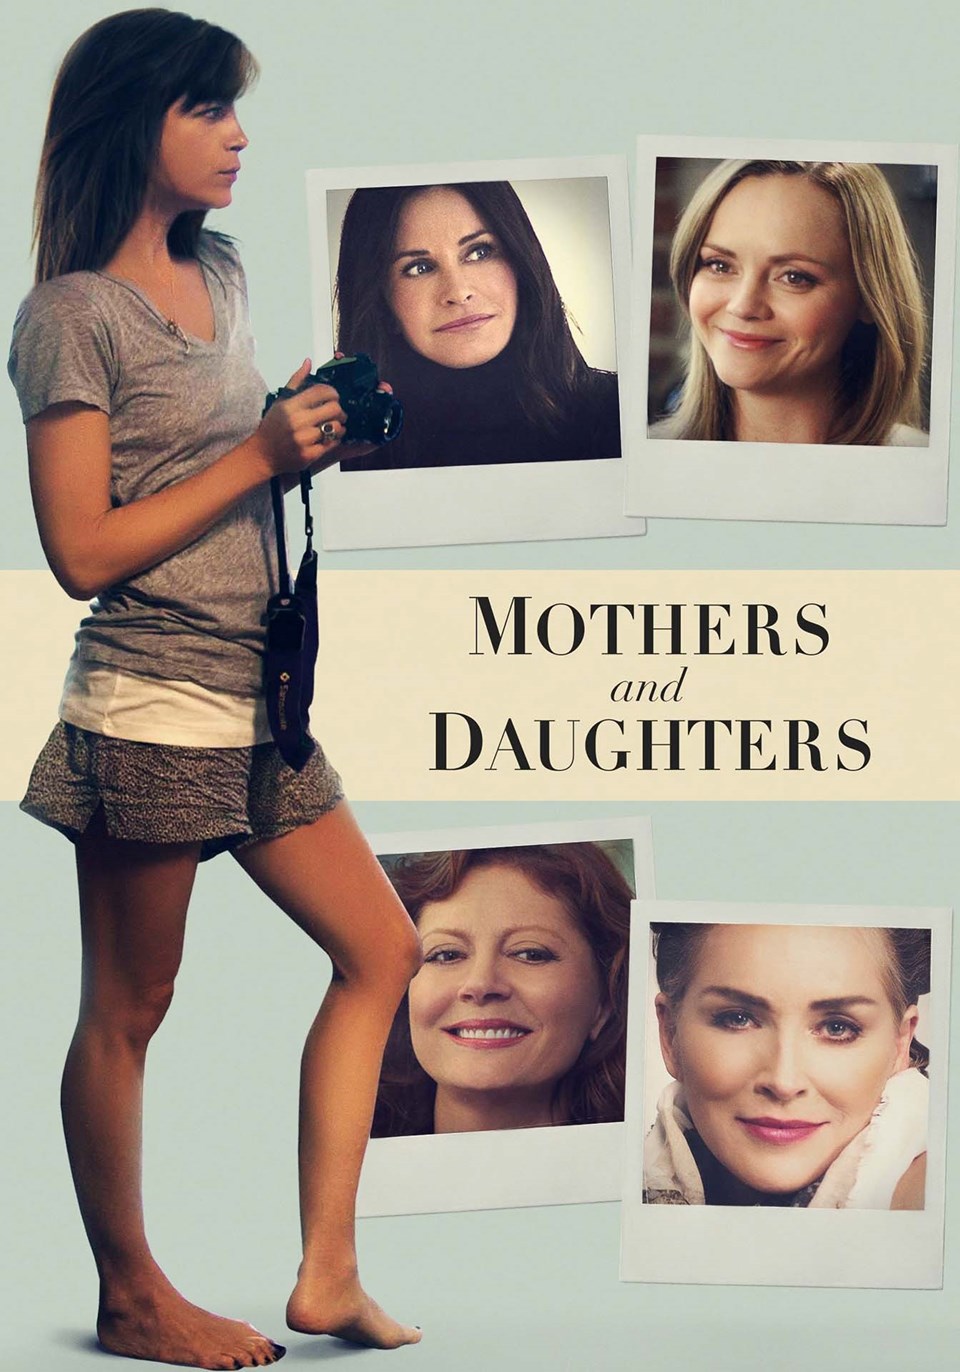 puhutv'den günün filmi: Anneler ve Kızları (Mothers and Daughters) - 1